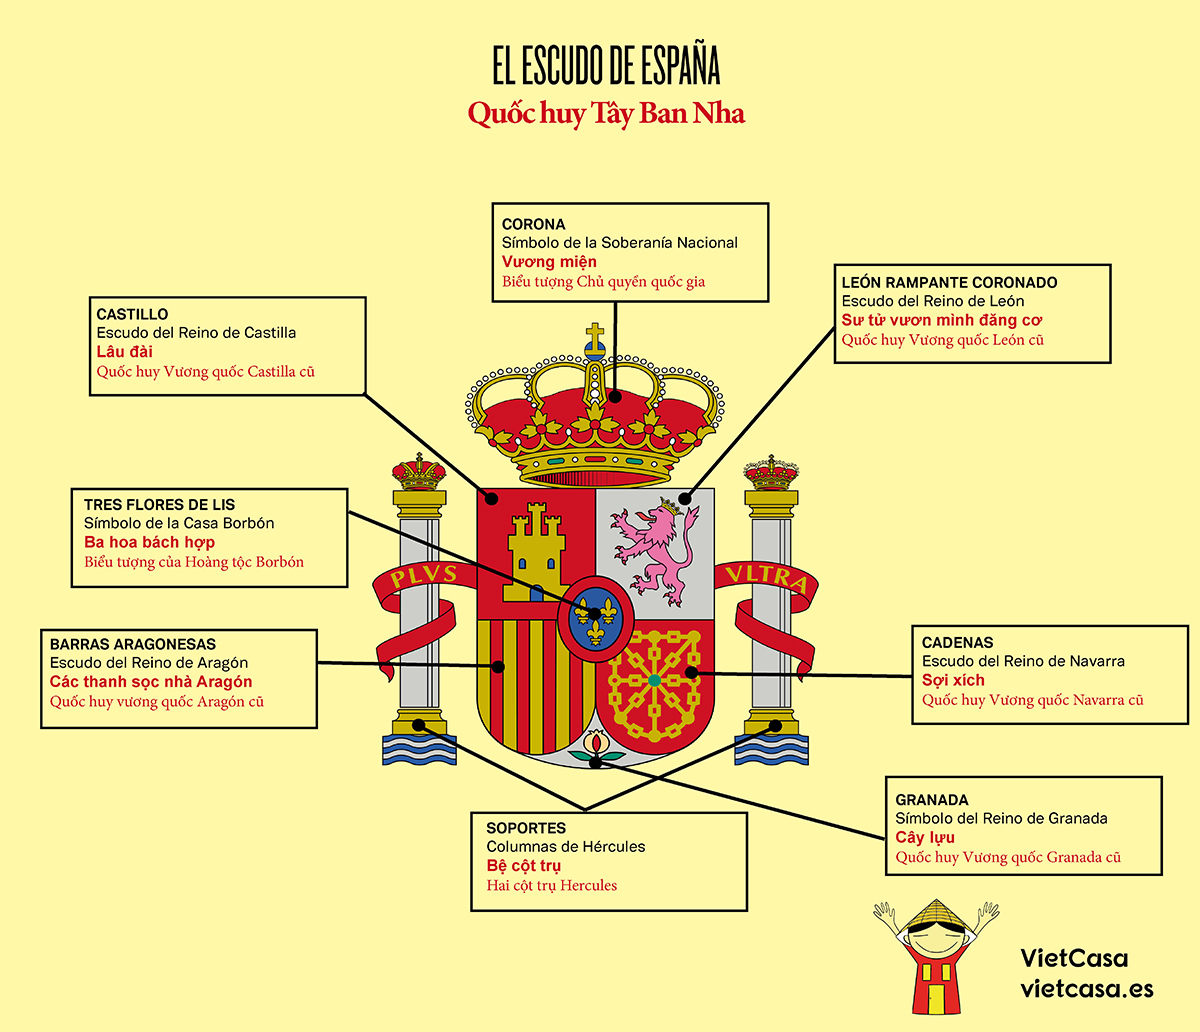 Quốc huy Tây Ban Nha: Quốc huy Tây Ban Nha, hình chữ thập đầy uy nghiêm, tượng trưng cho tinh thần quả cảm của một dân tộc. Năm 2024, quốc huy Tây Ban Nha tỏa sáng rực rỡ và tràn đầy hy vọng, khi quốc gia này đang chứng kiến sự phát triển vượt bậc trong nhiều lĩnh vực.